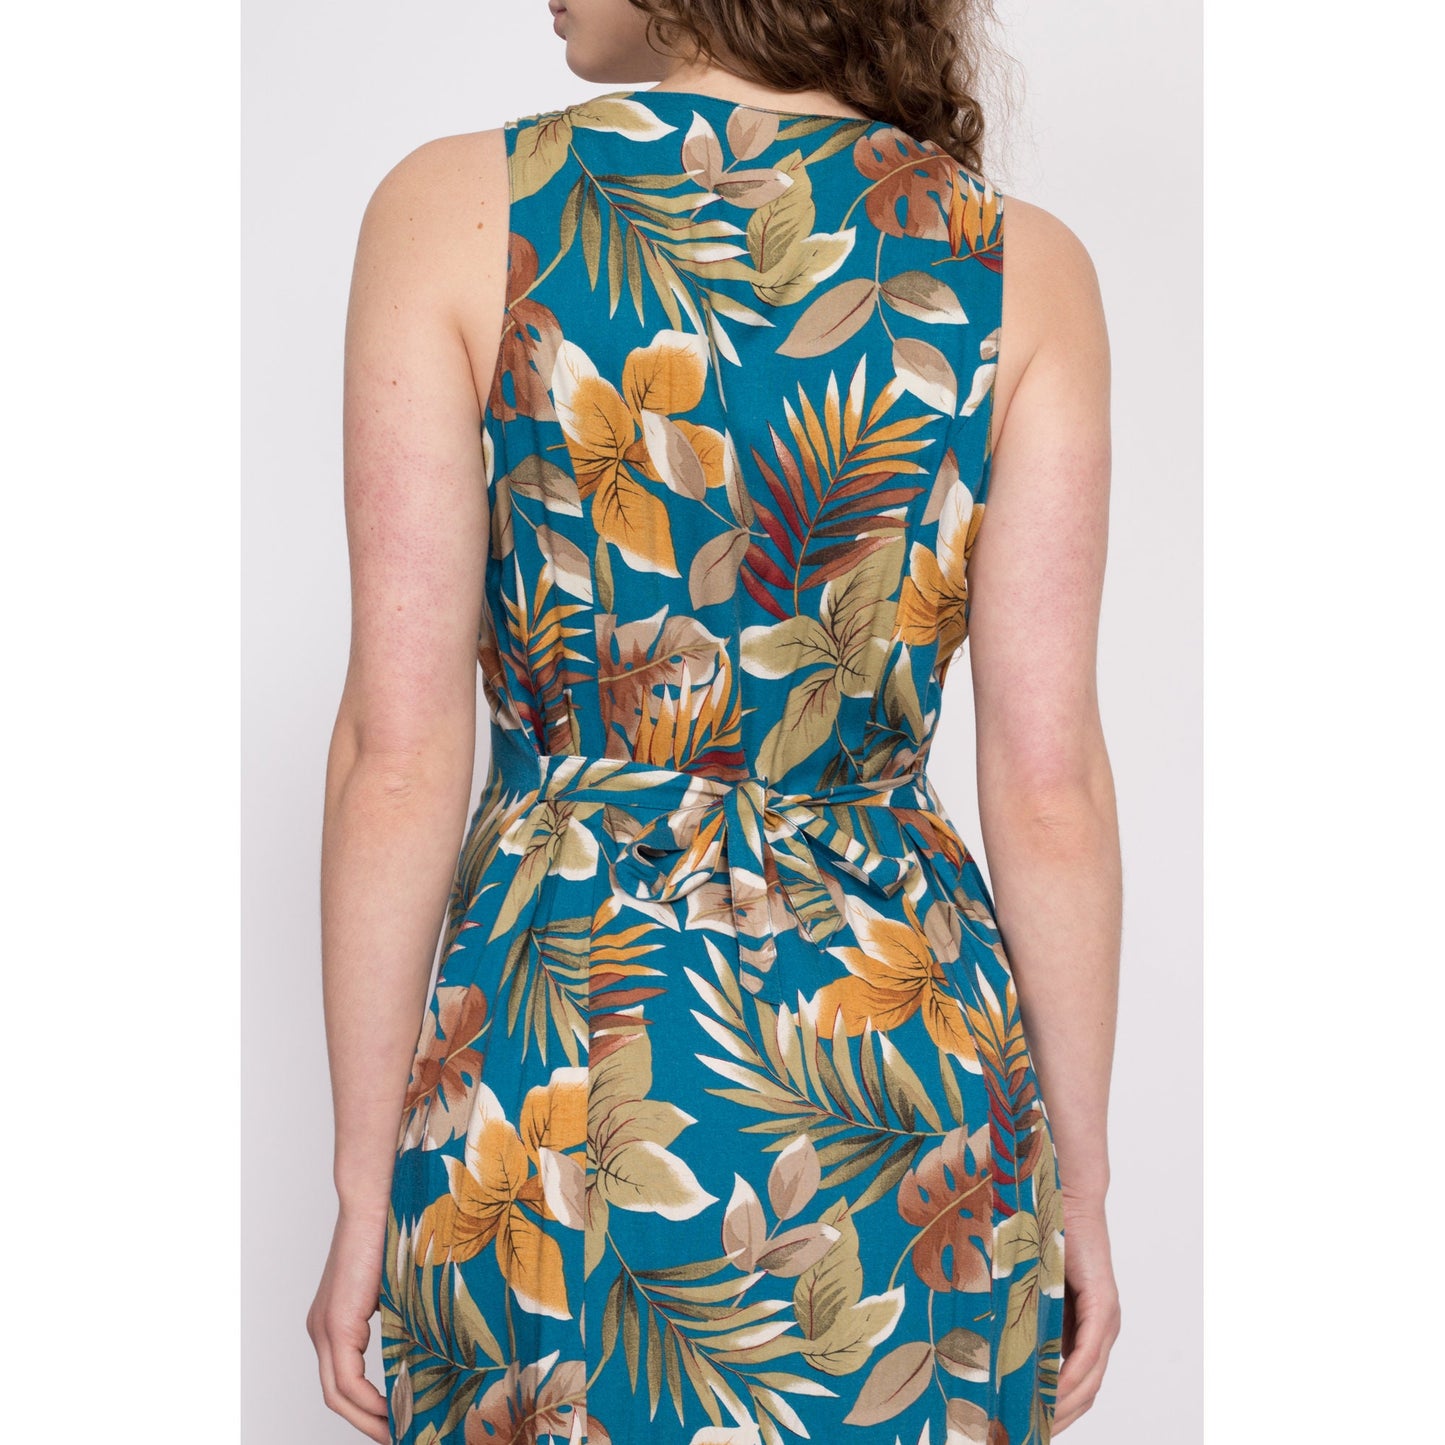 90s Blue Tropical Floral Sundress - Medium | Vintage Sleeveless Button Up Summer Maxi Dress